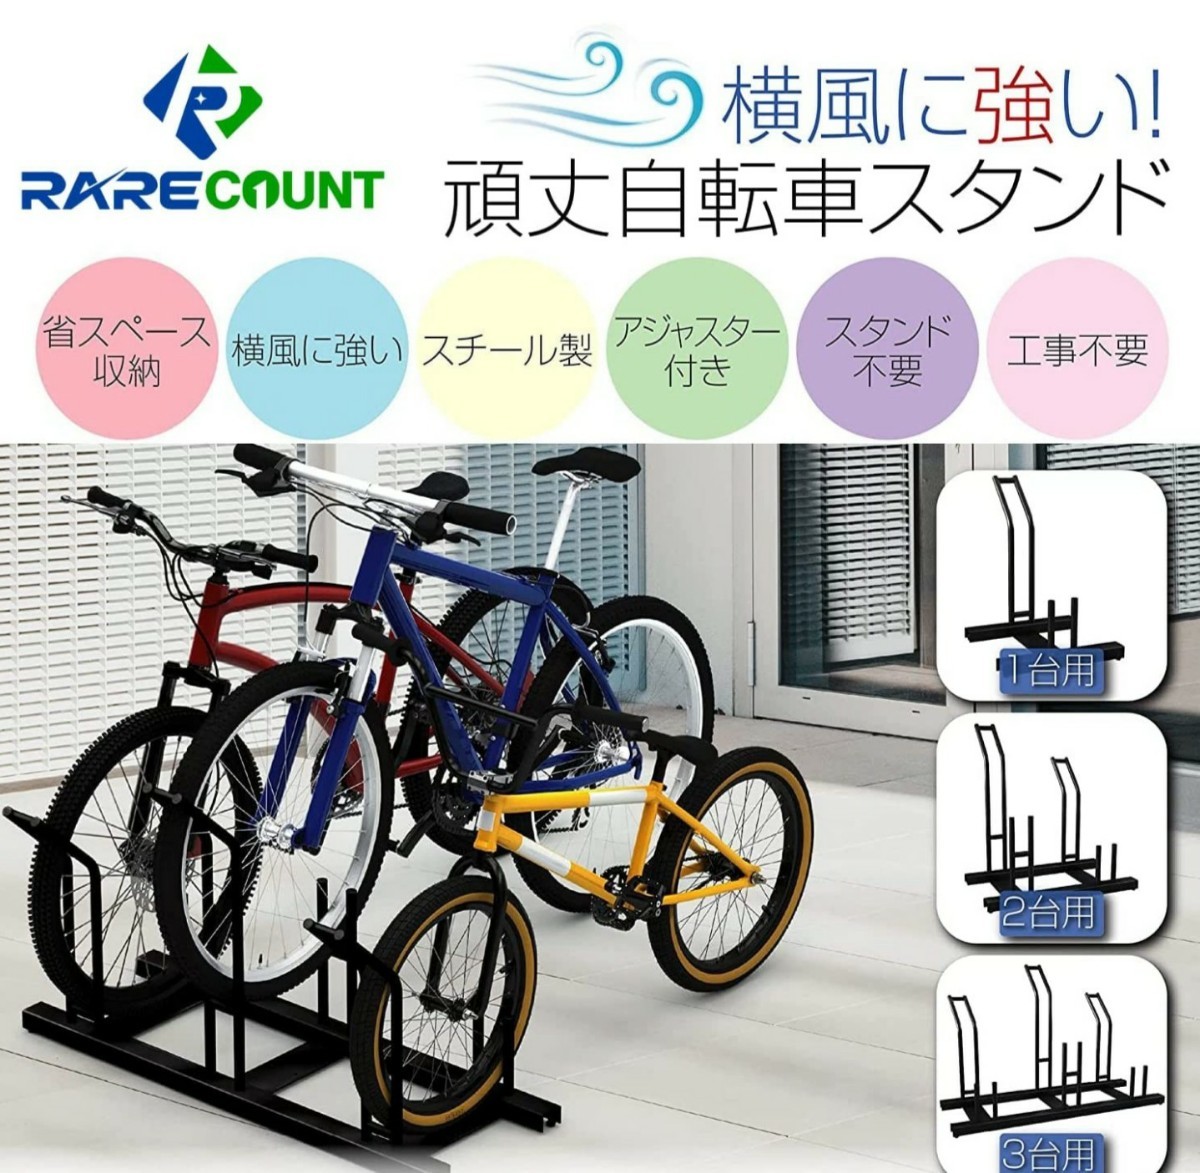 952★自転車スタンド 横風に強い 頑丈 駐輪 自転車ラック (1台用)